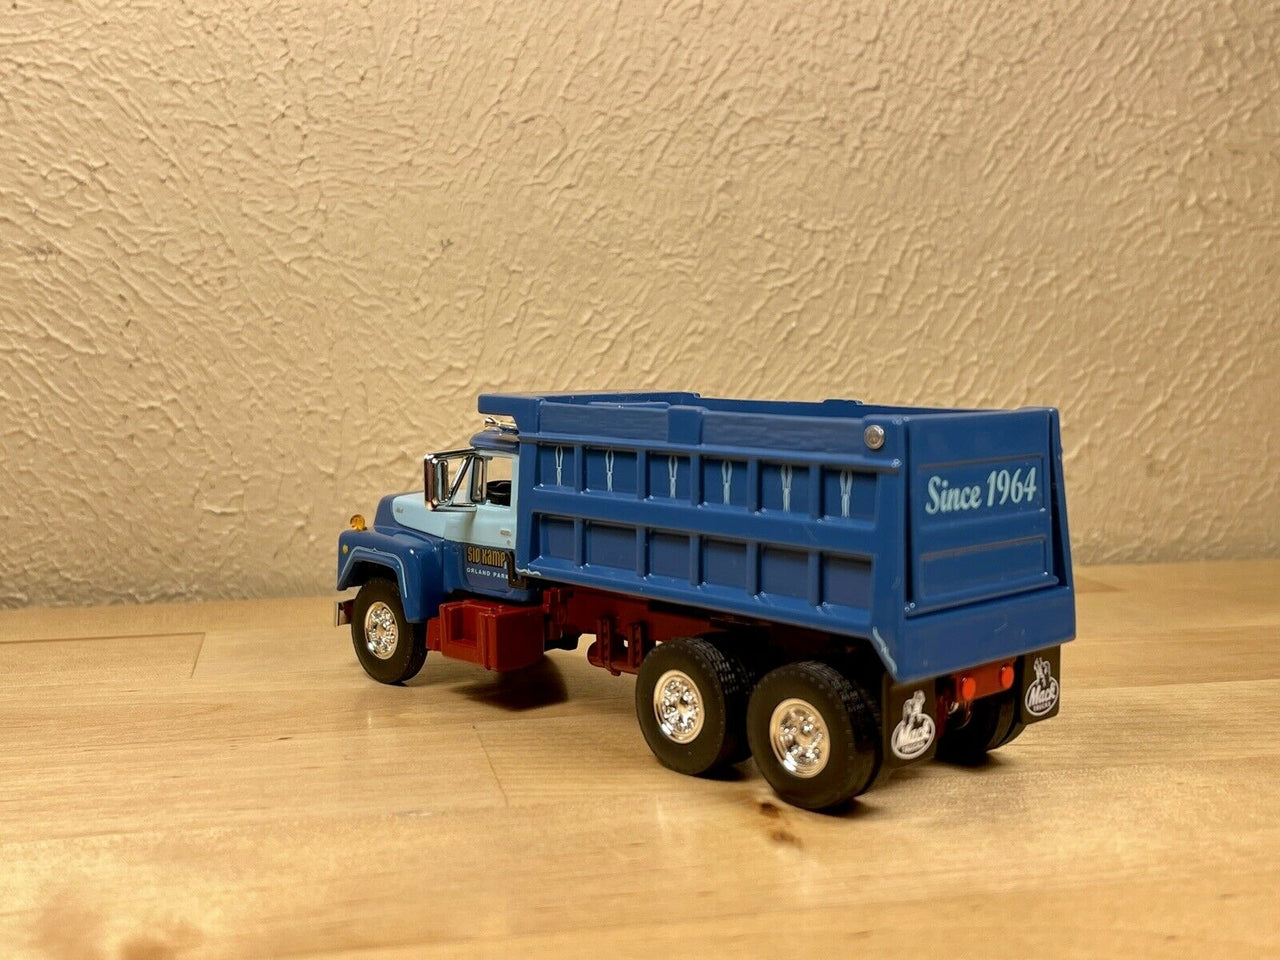 60-1161 Mack Sid Kamp Dump Truck Scale 1:64